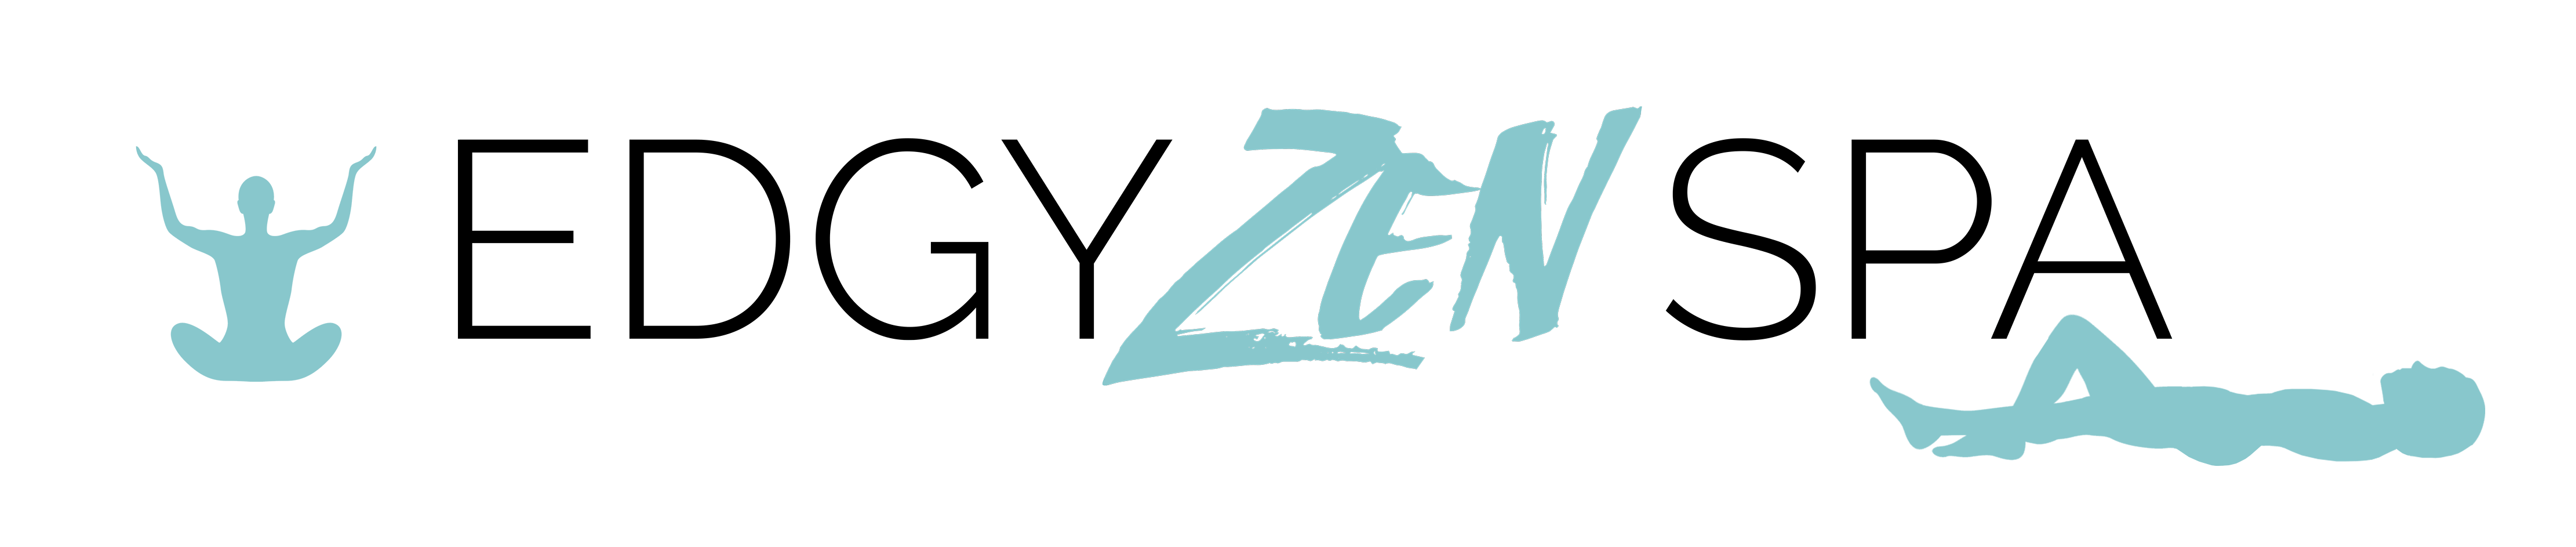 Zen Spa Logo - Relaxing Wellness Spa and Yoga Studio in Alexandria, VA. Edgy ZEN Spa